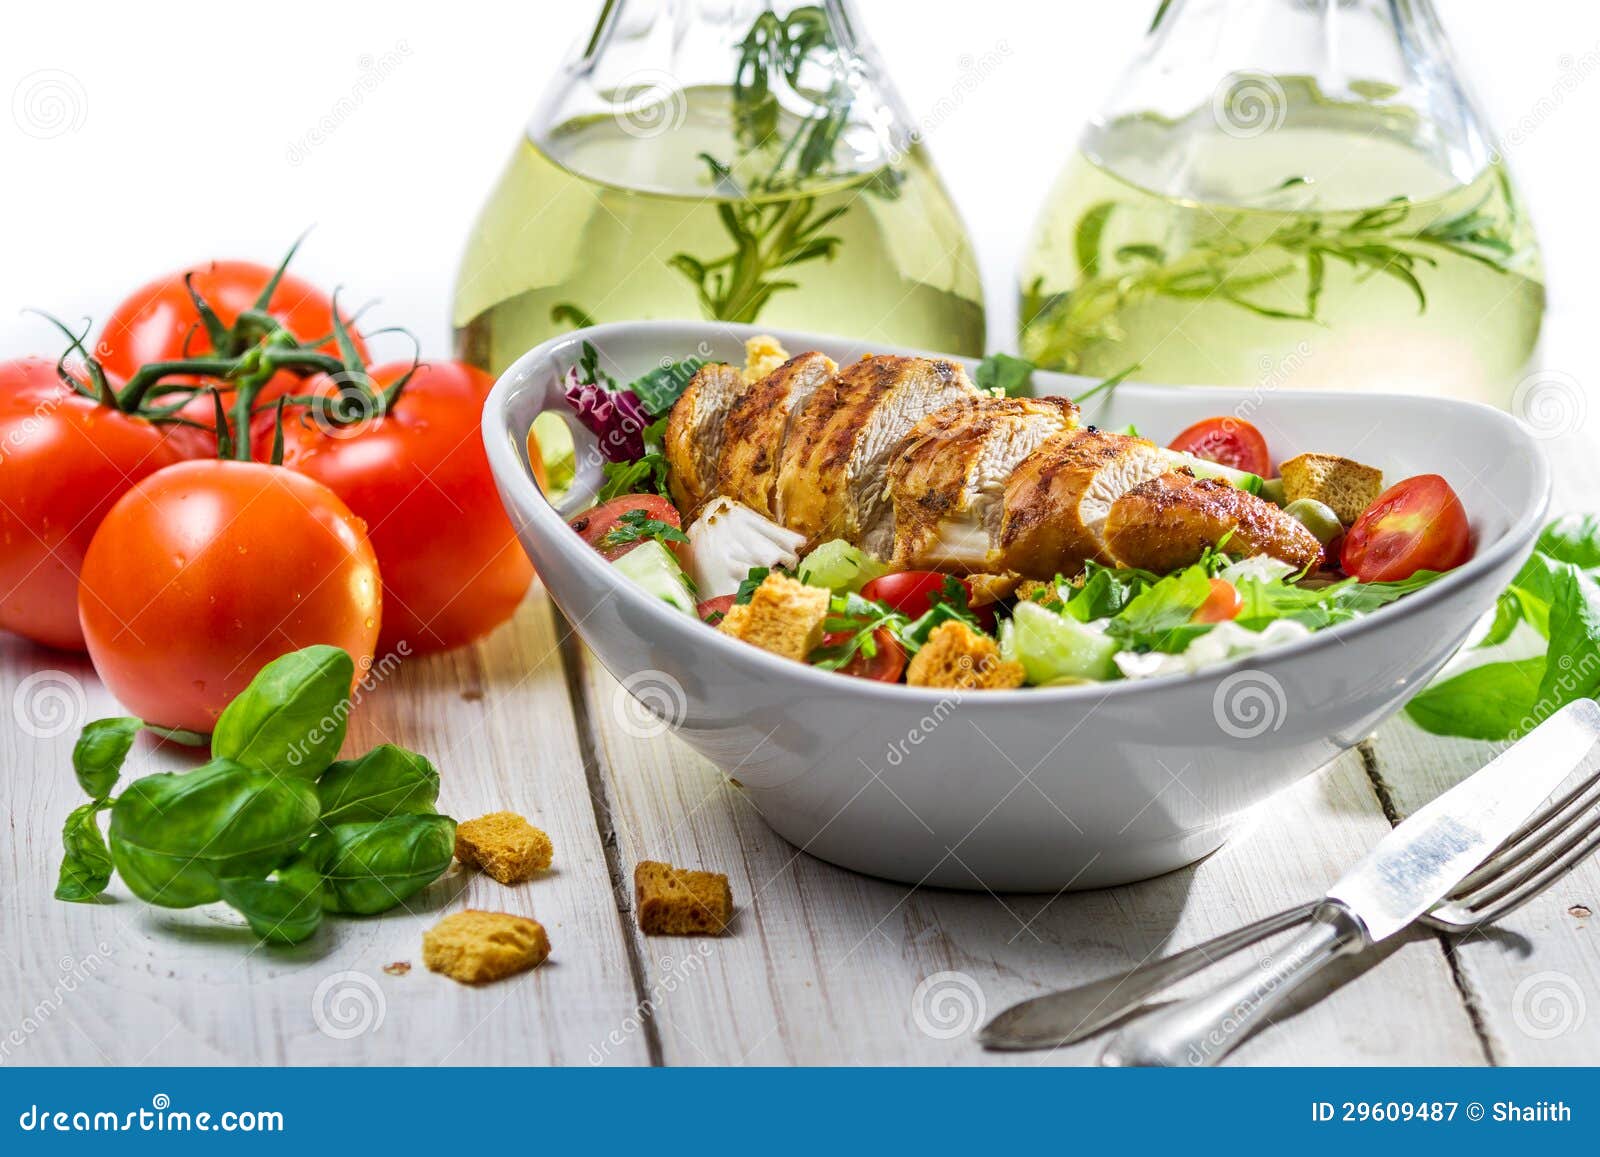 chicken salad clipart - photo #47